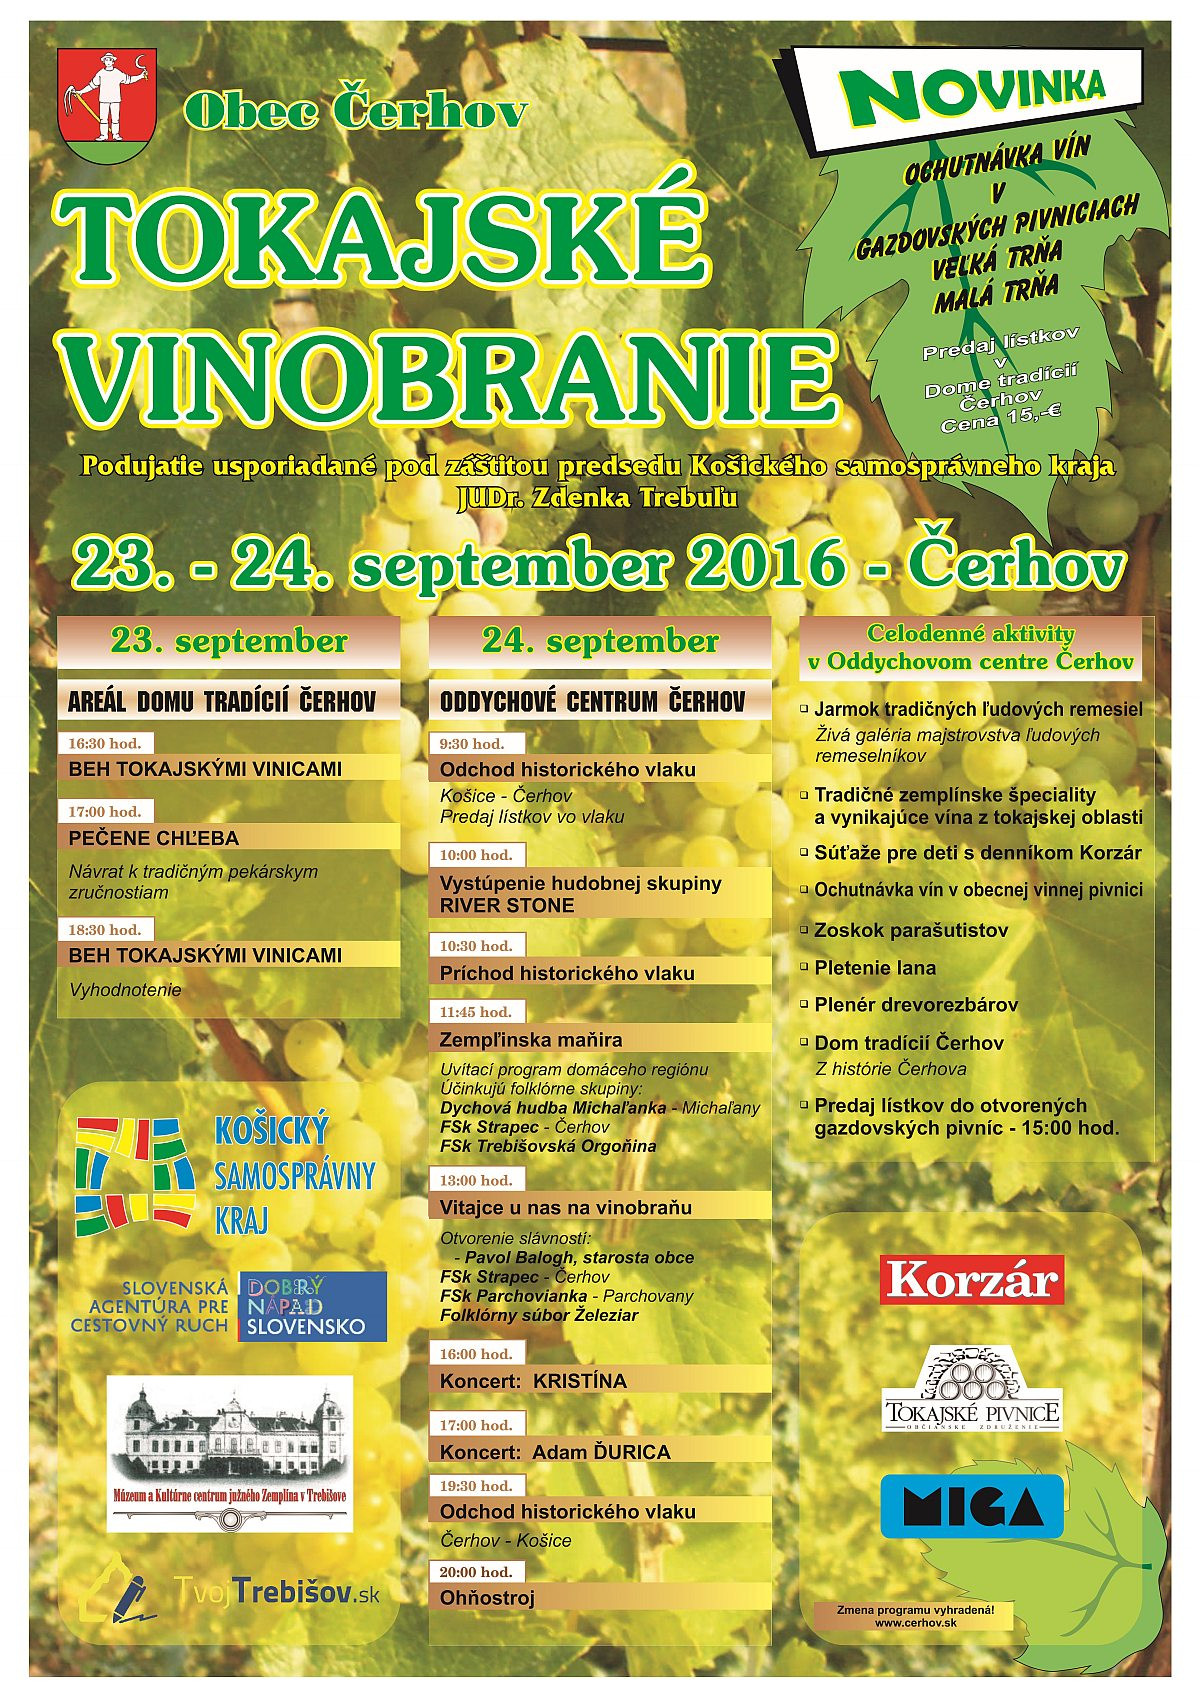 Tokajské vinobranie Čerhov 2016 (23.-24.9.2016)